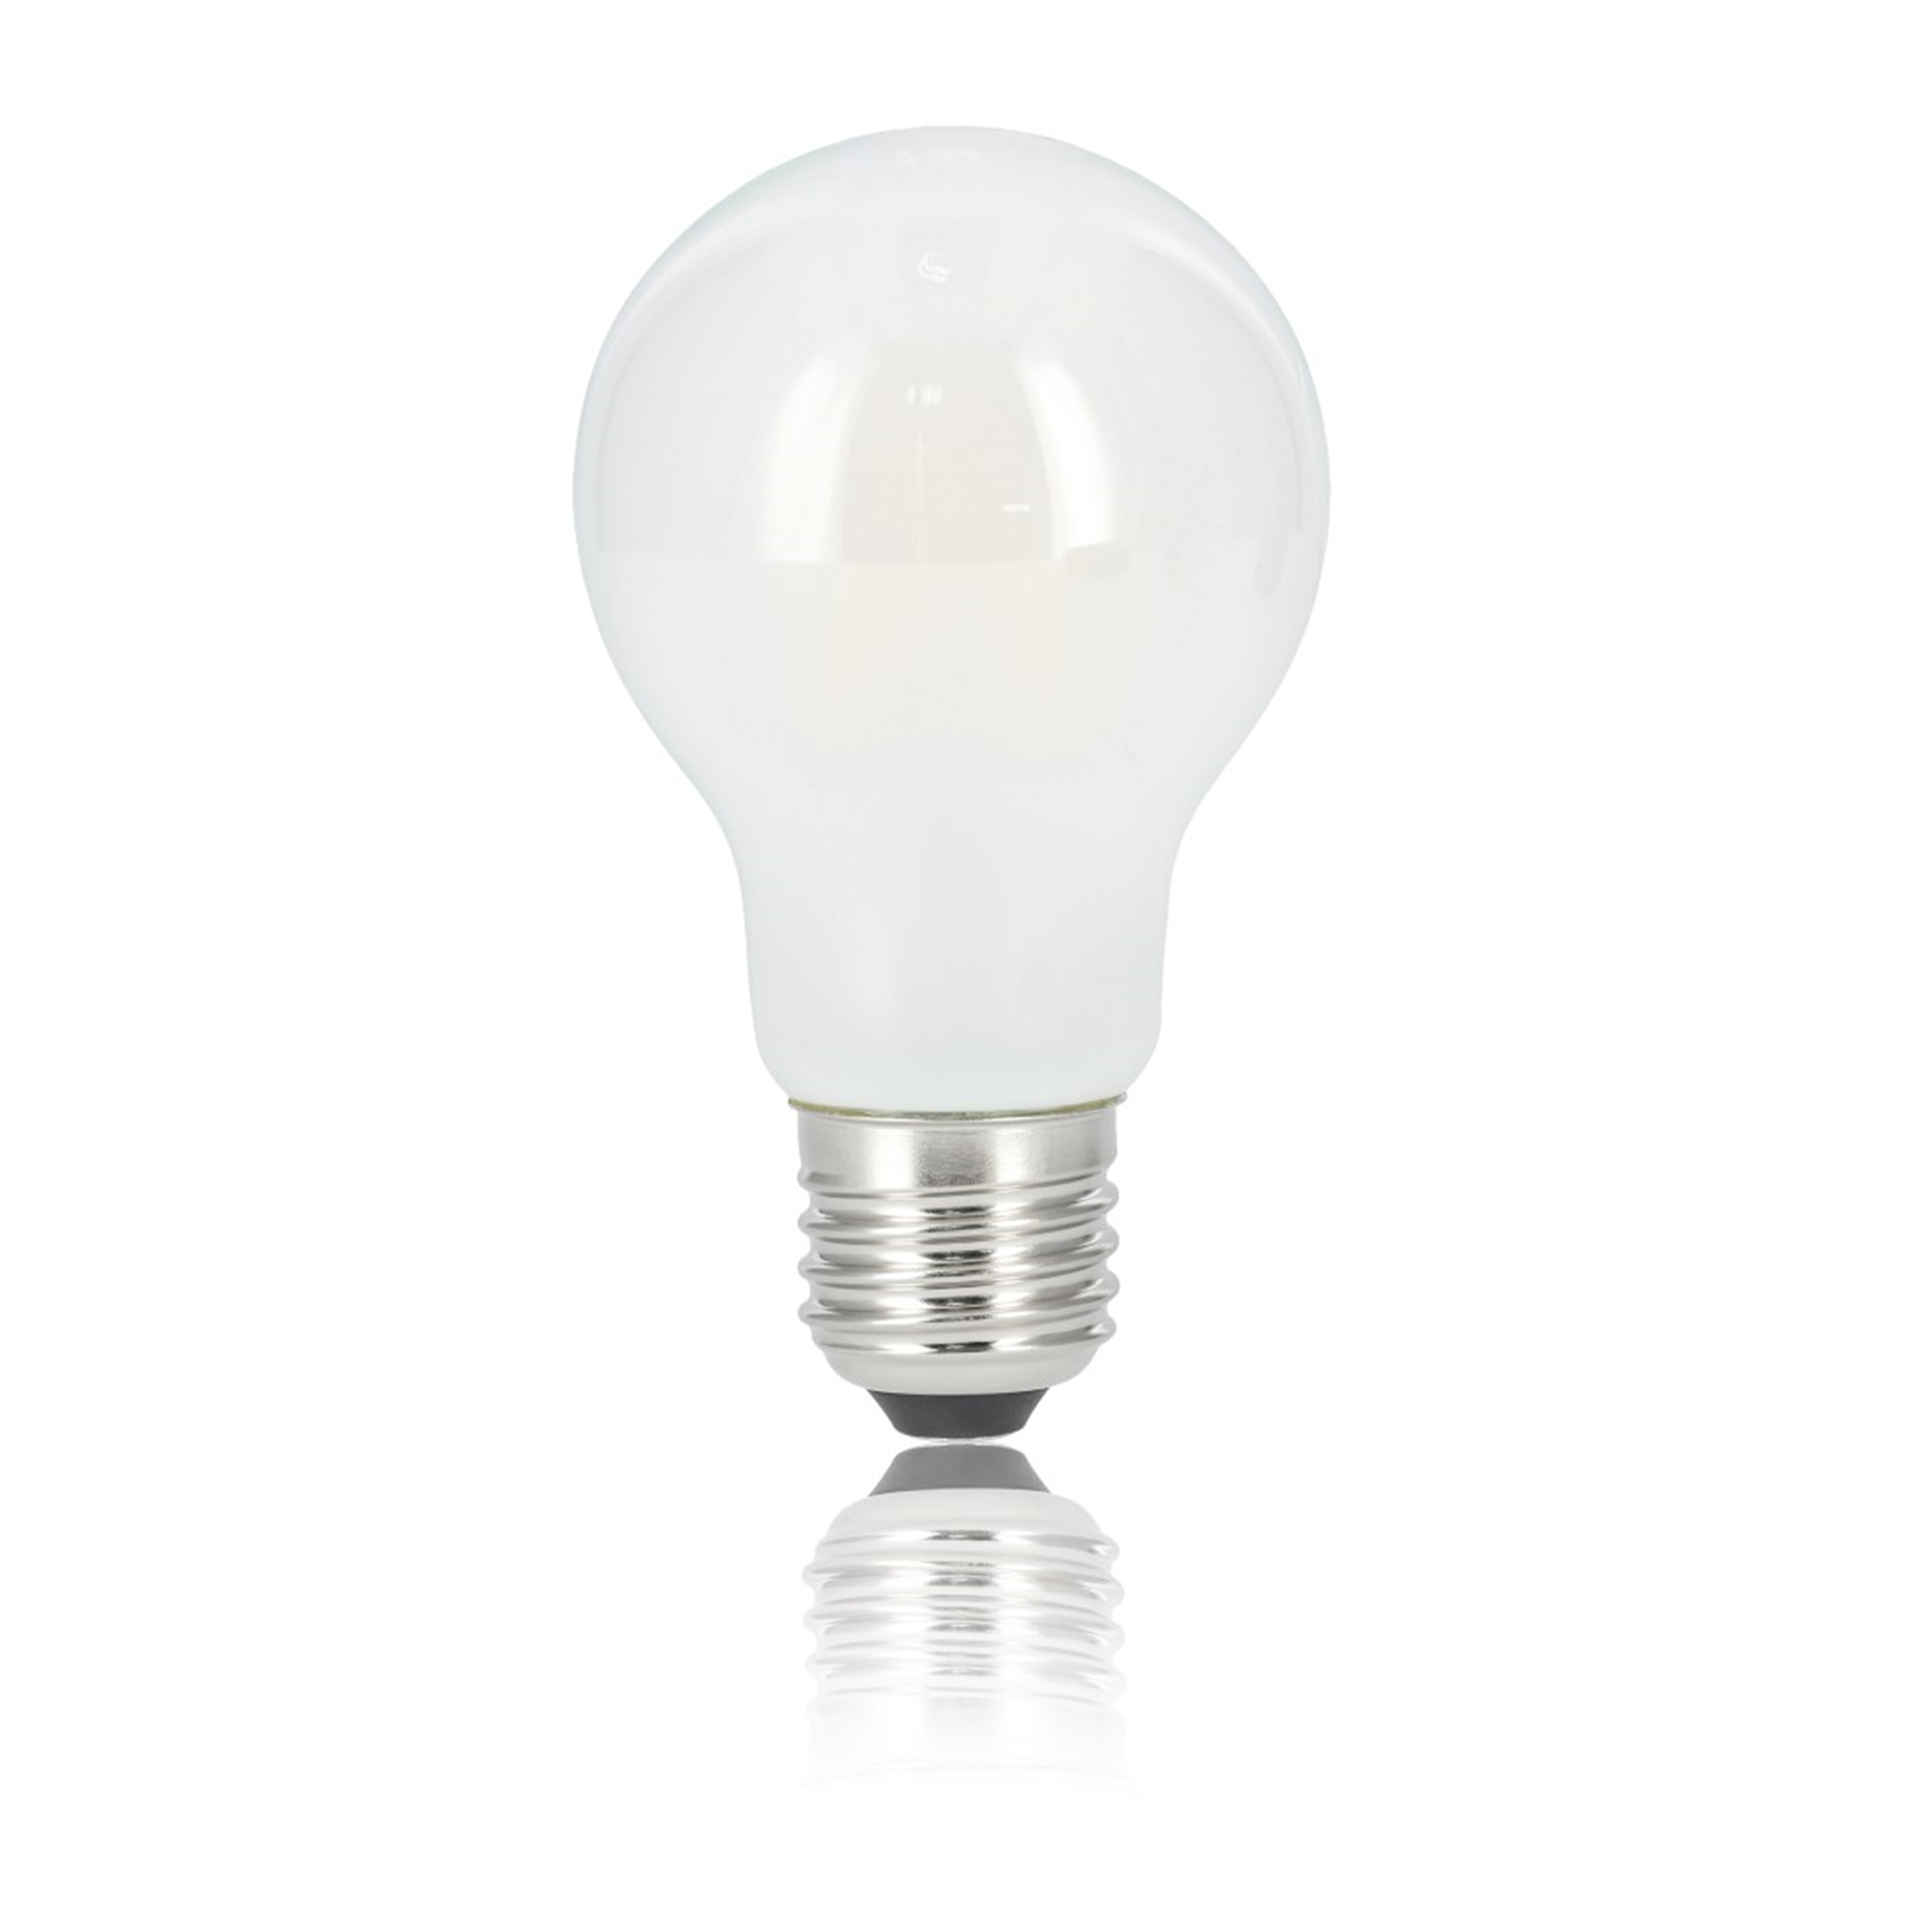 XAVAX E27, 806lm ersetzt E27 LED-Lampe 60W Warmweiß